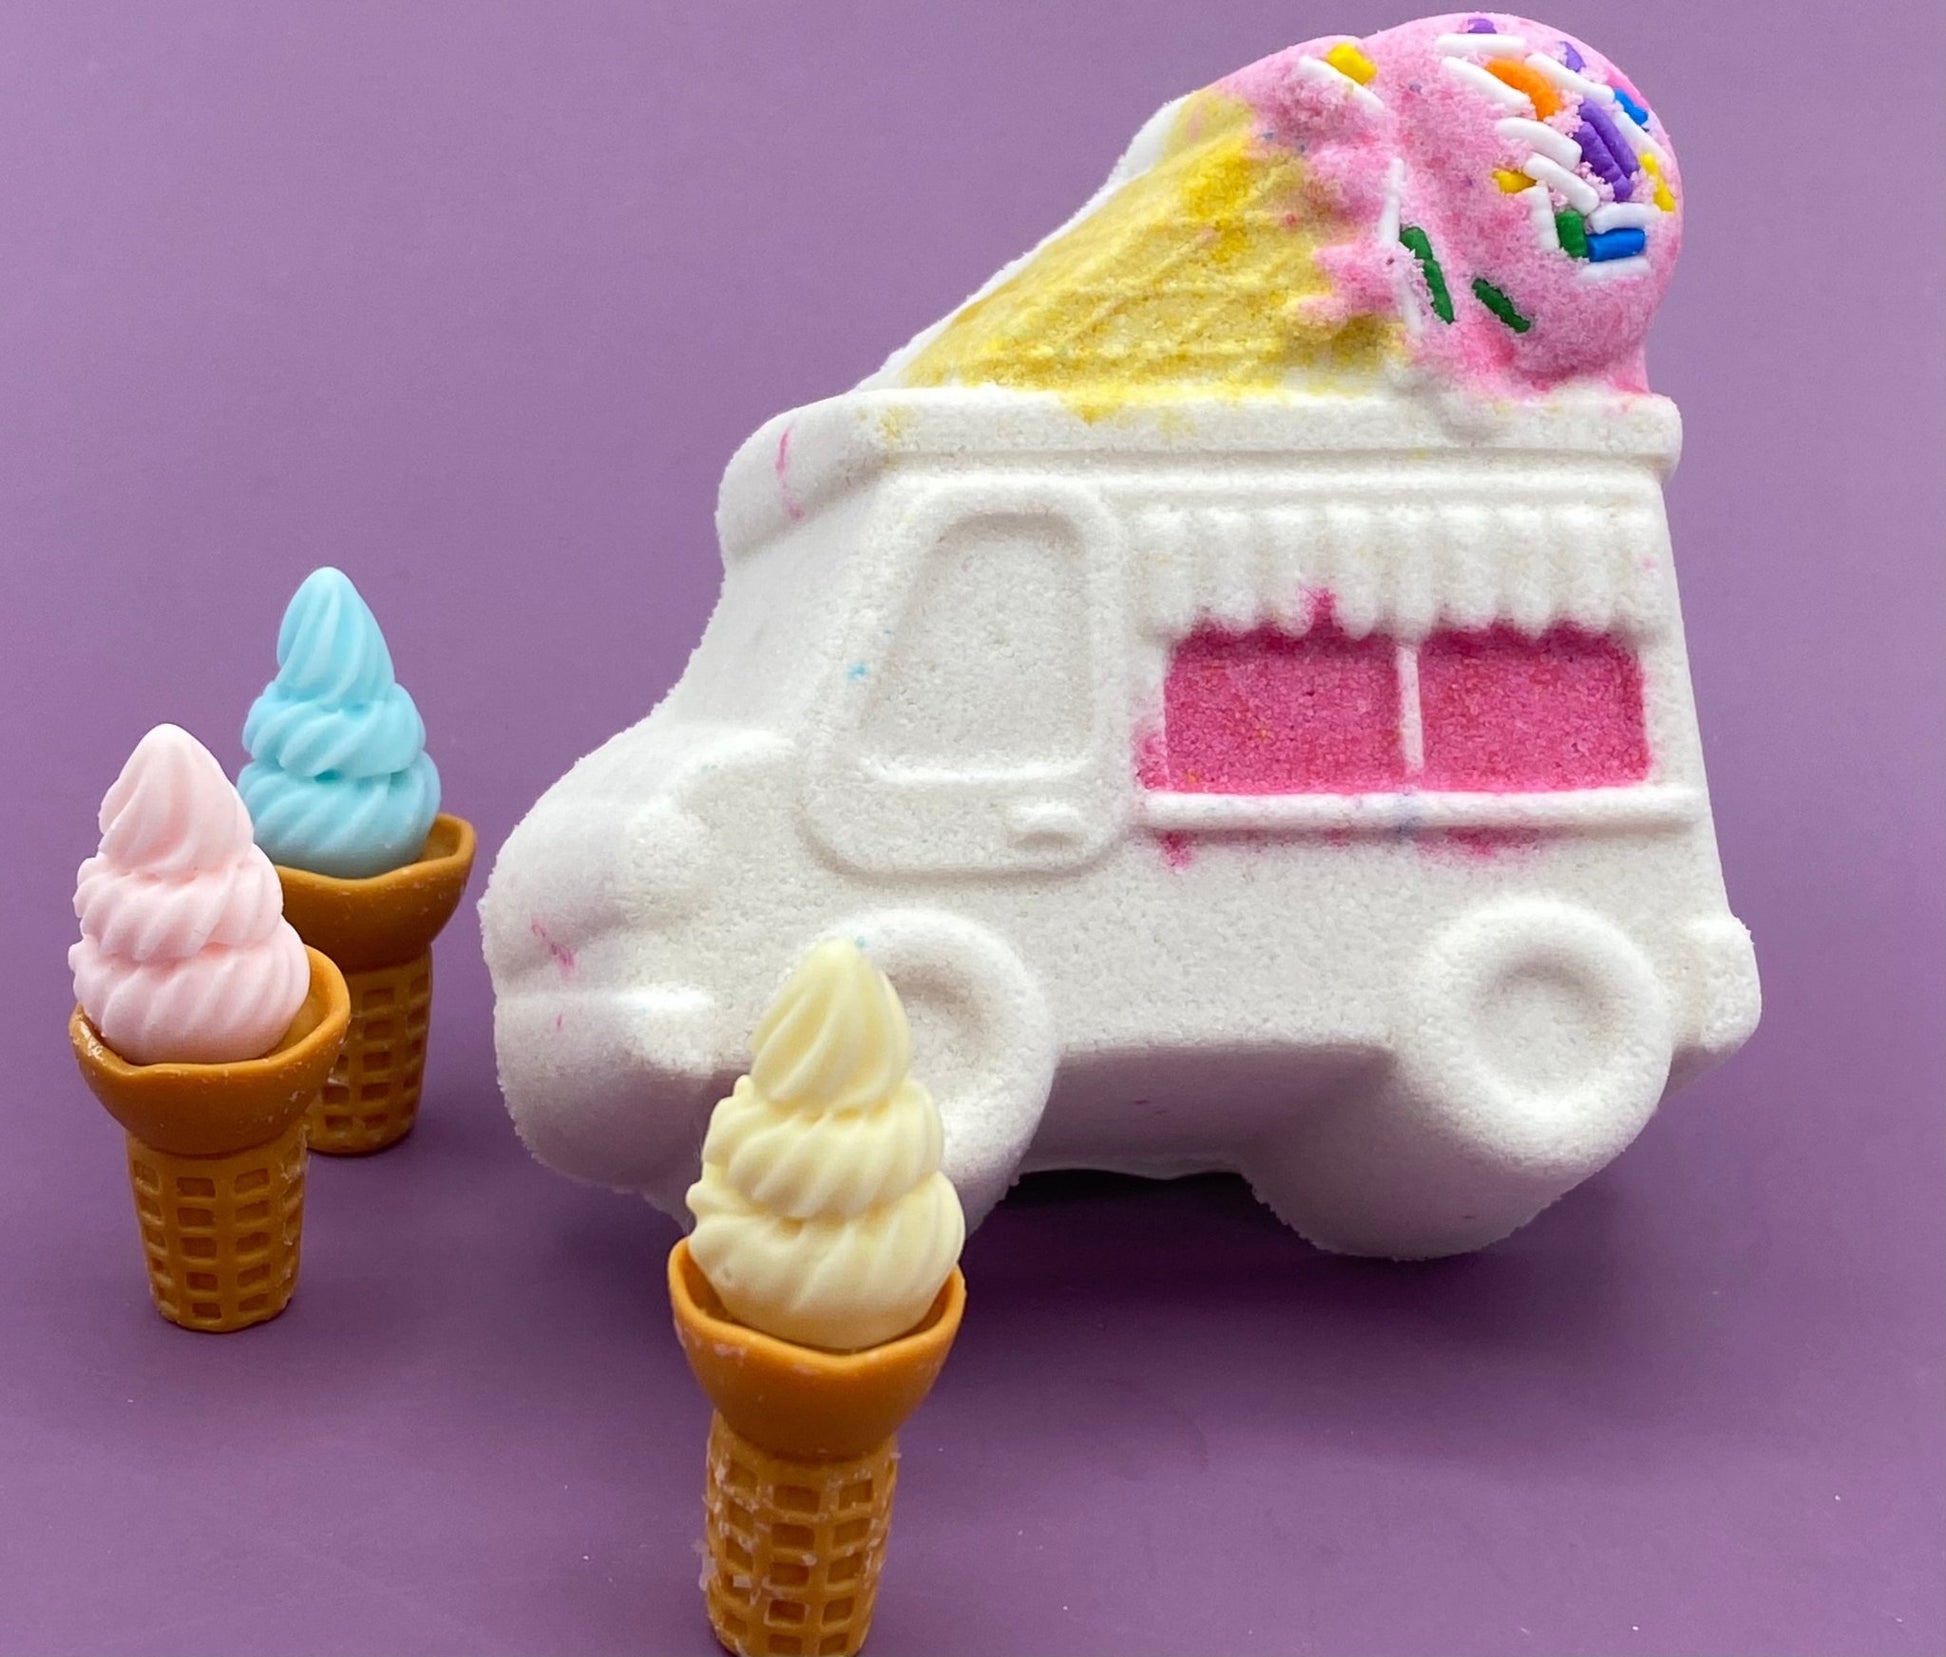 Ice Cream Truck Bath Bomb with Toy Inside - Berwyn Betty's Bath & Body Shop